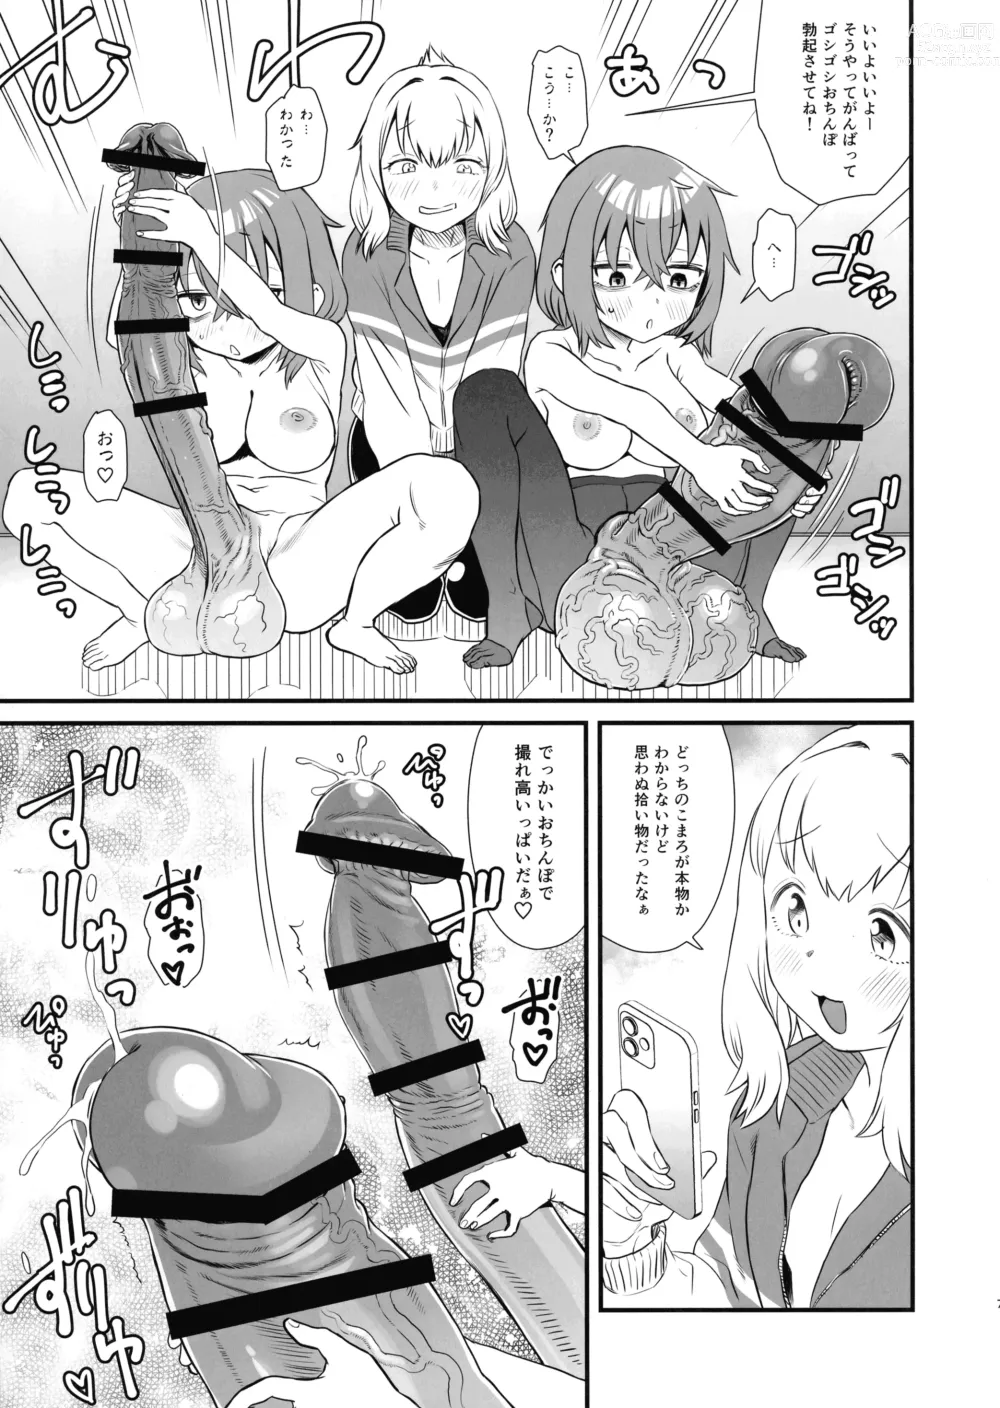 Page 6 of doujinshi Seito-kai ni mo sao anaru!